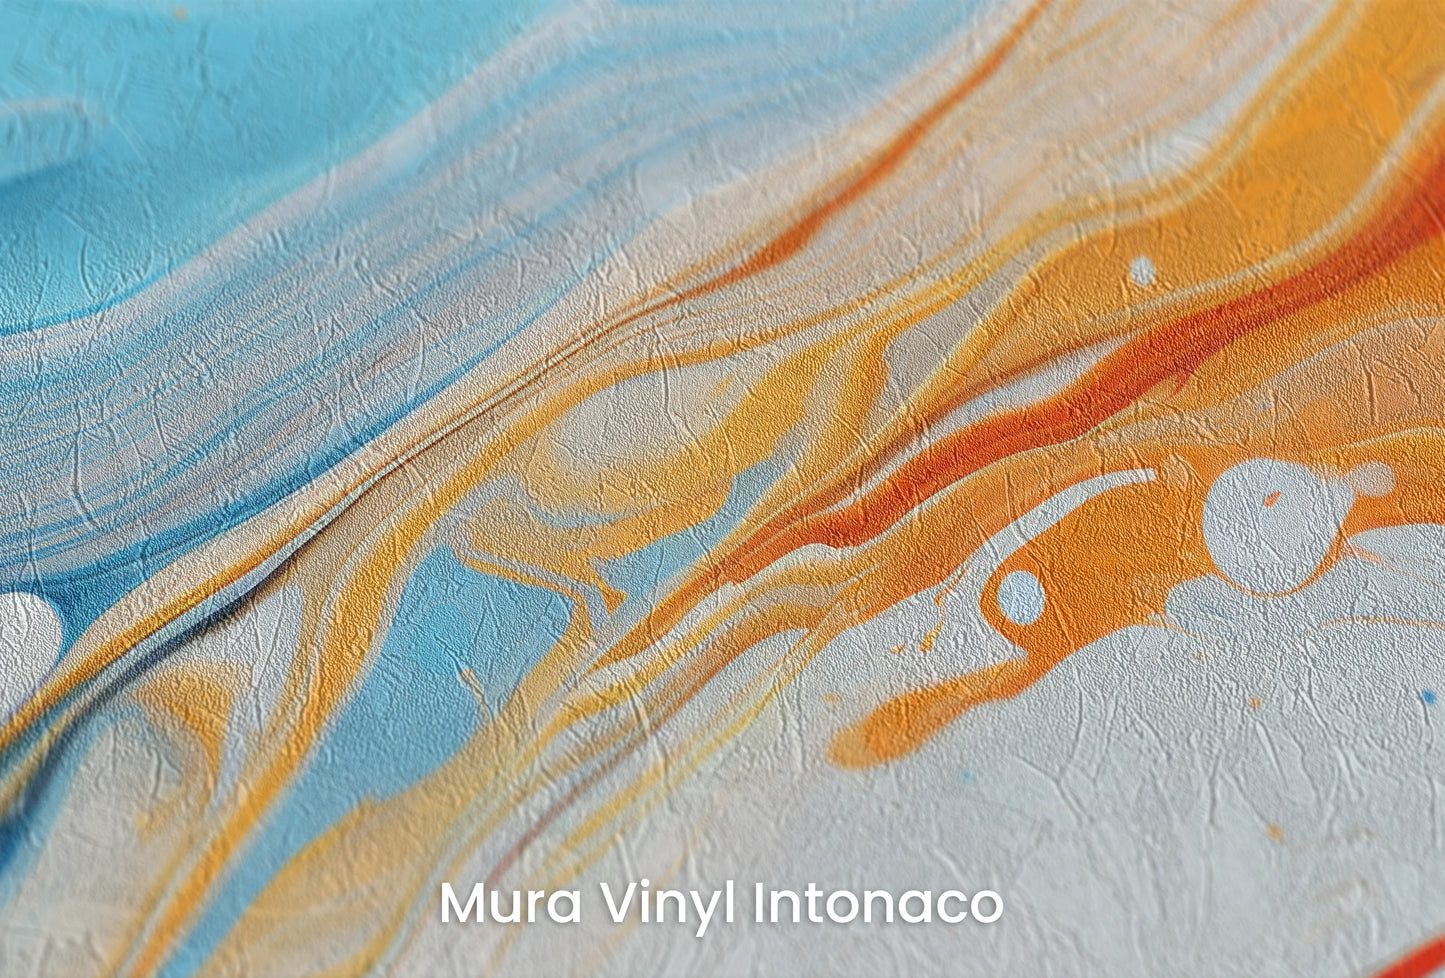 Zbliżenie na artystyczną fototapetę o nazwie Saturn's Serenity na podłożu Mura Vinyl Intonaco - struktura tartego tynku.